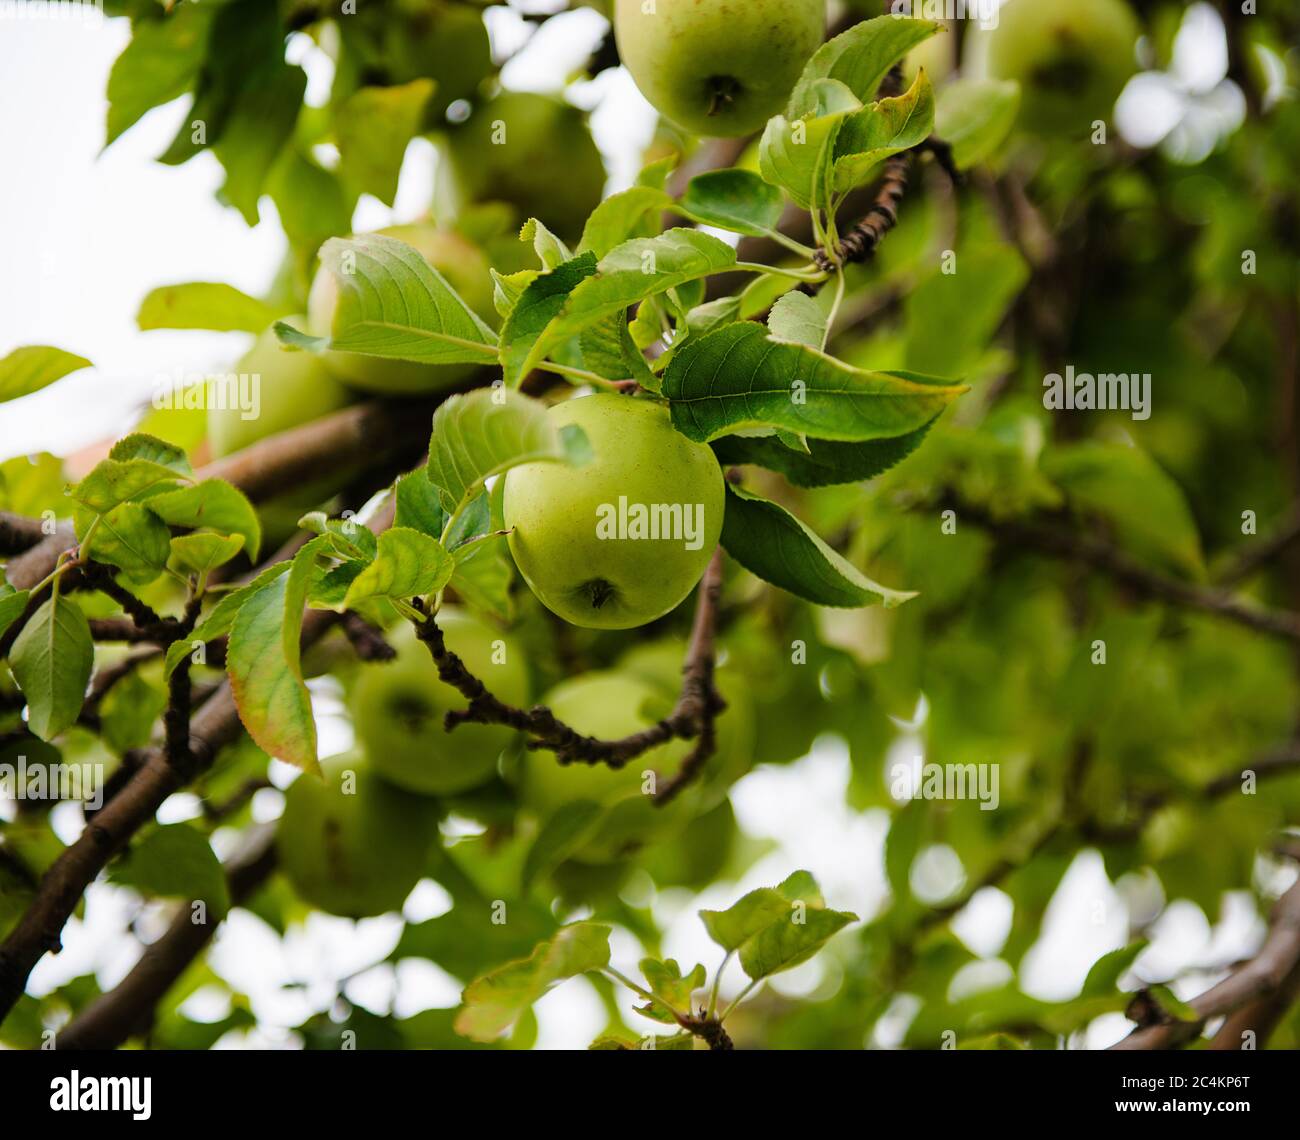 Primo piano di mele verdi che crescono in un frutteto di mele Foto Stock